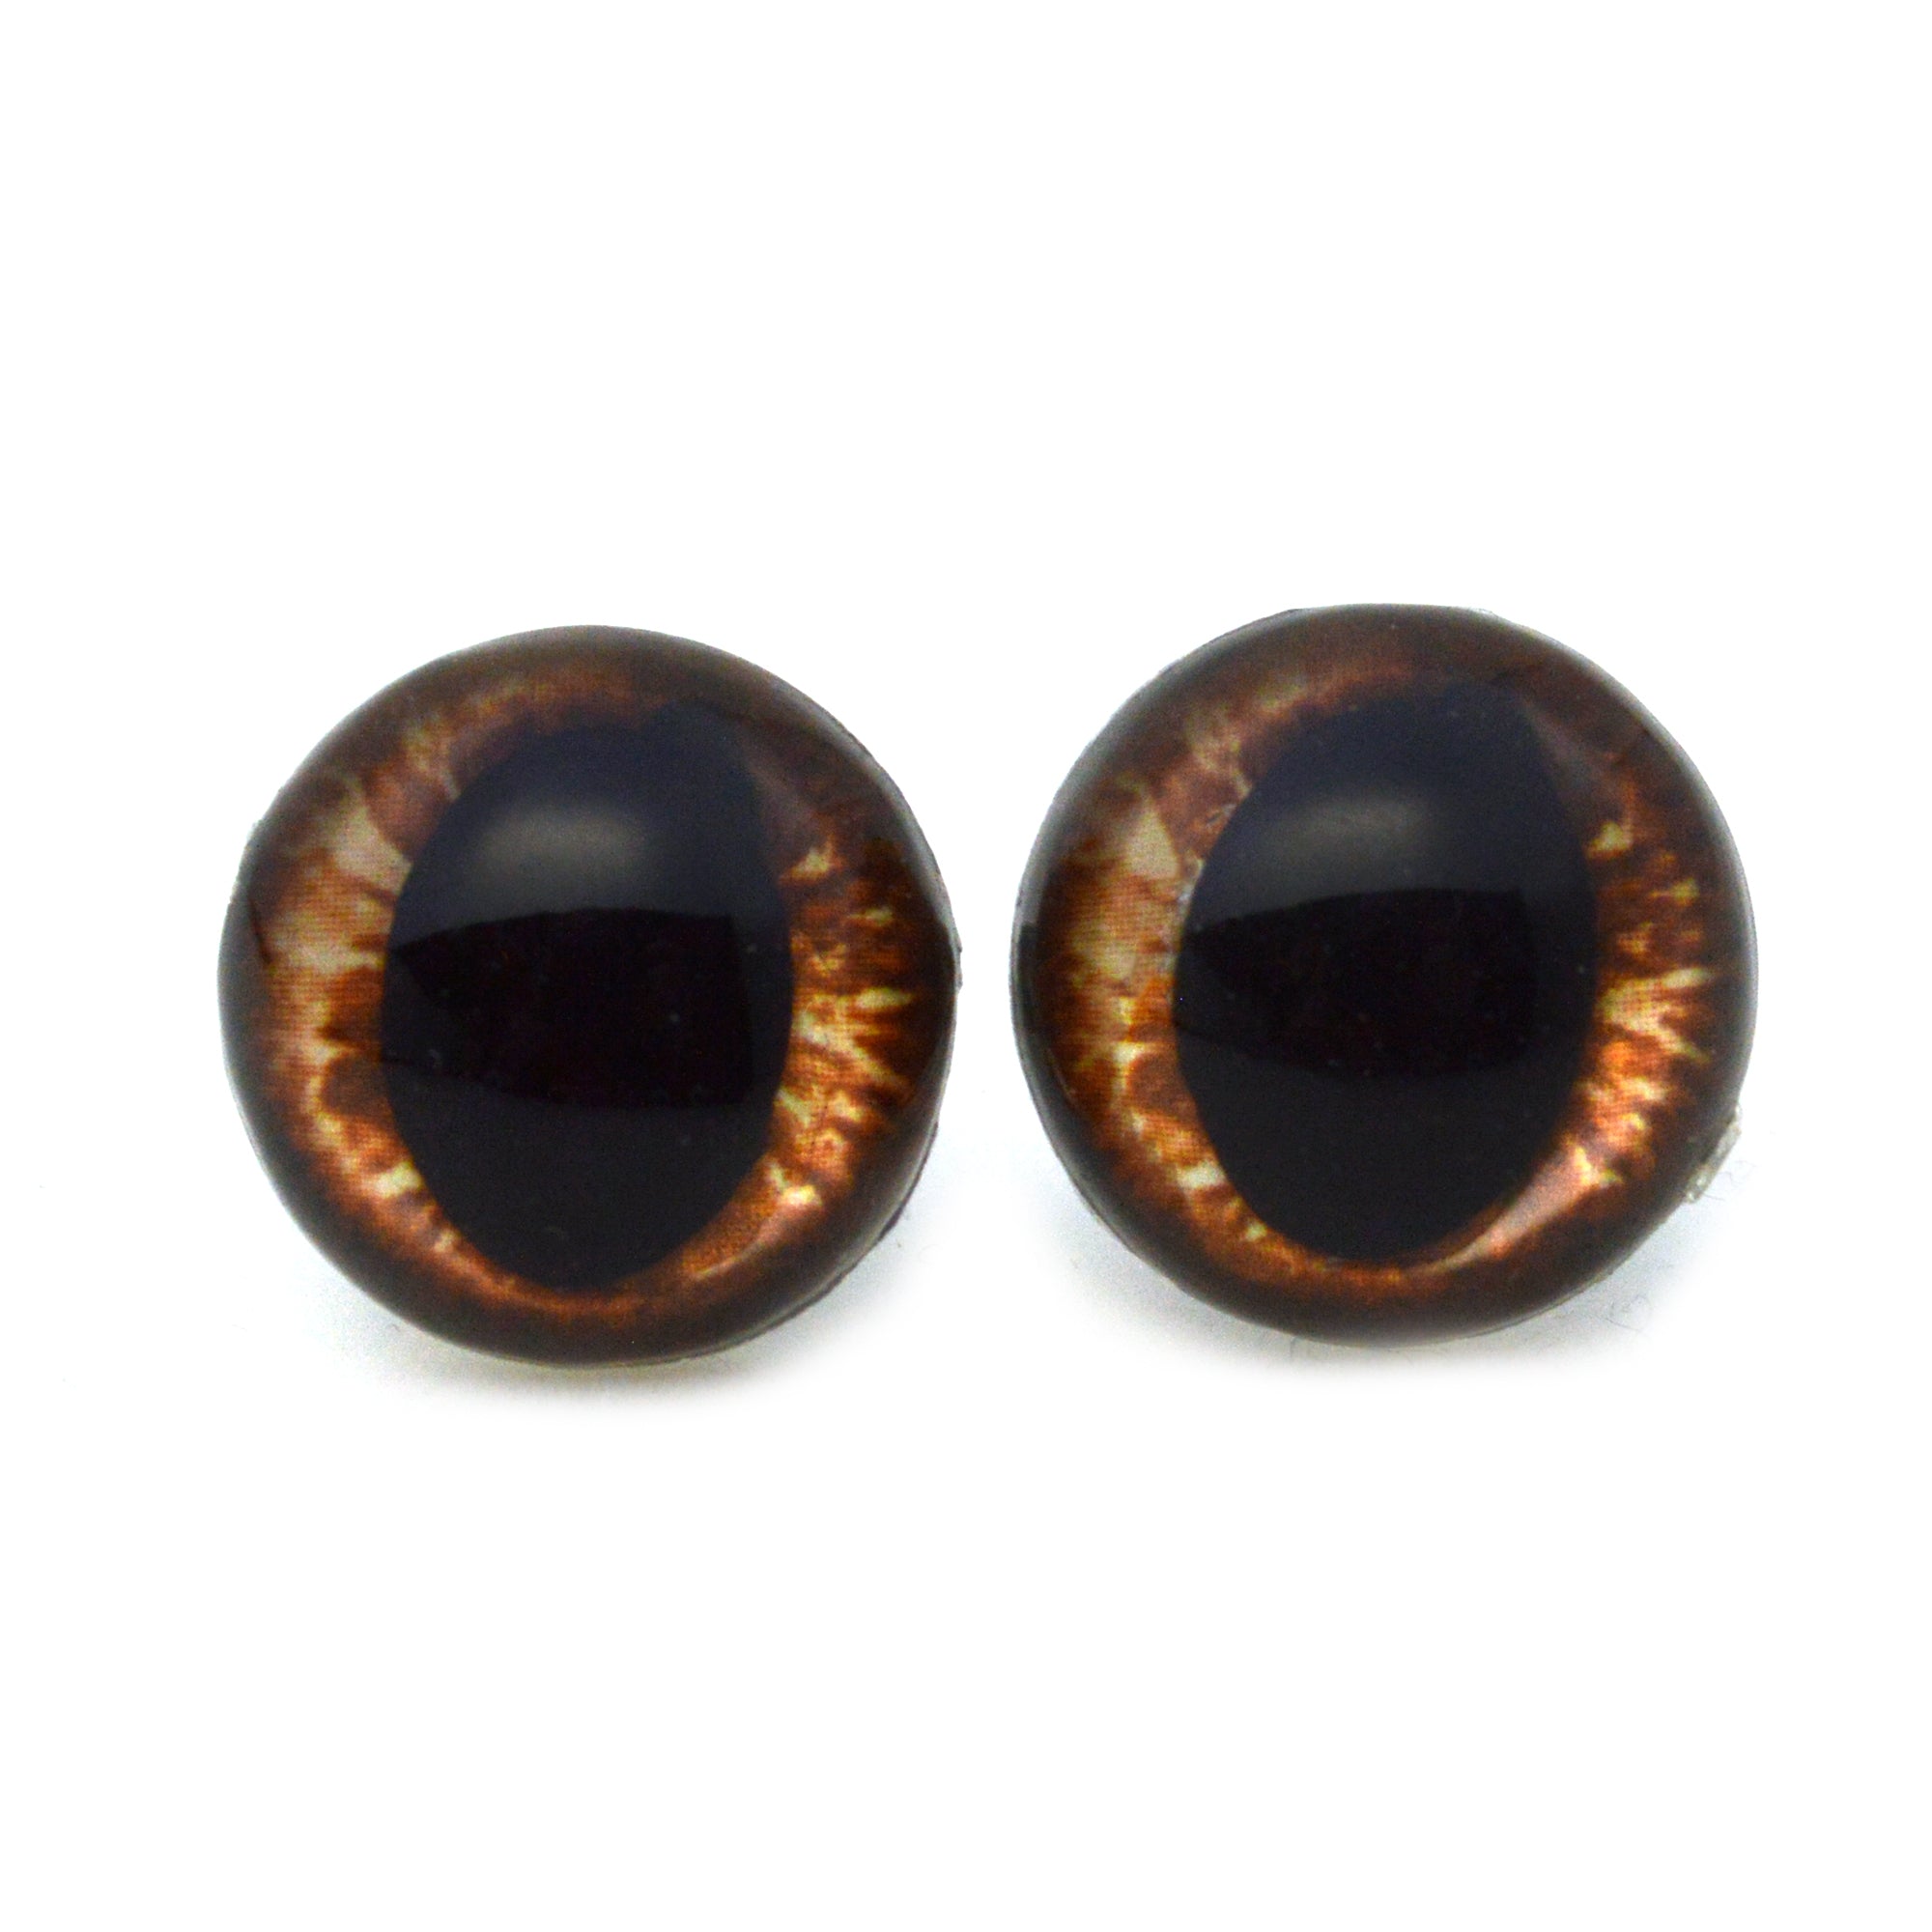 12 mm Orange (Amber) Safety Eyes, Orange safety eyes (12mm)…